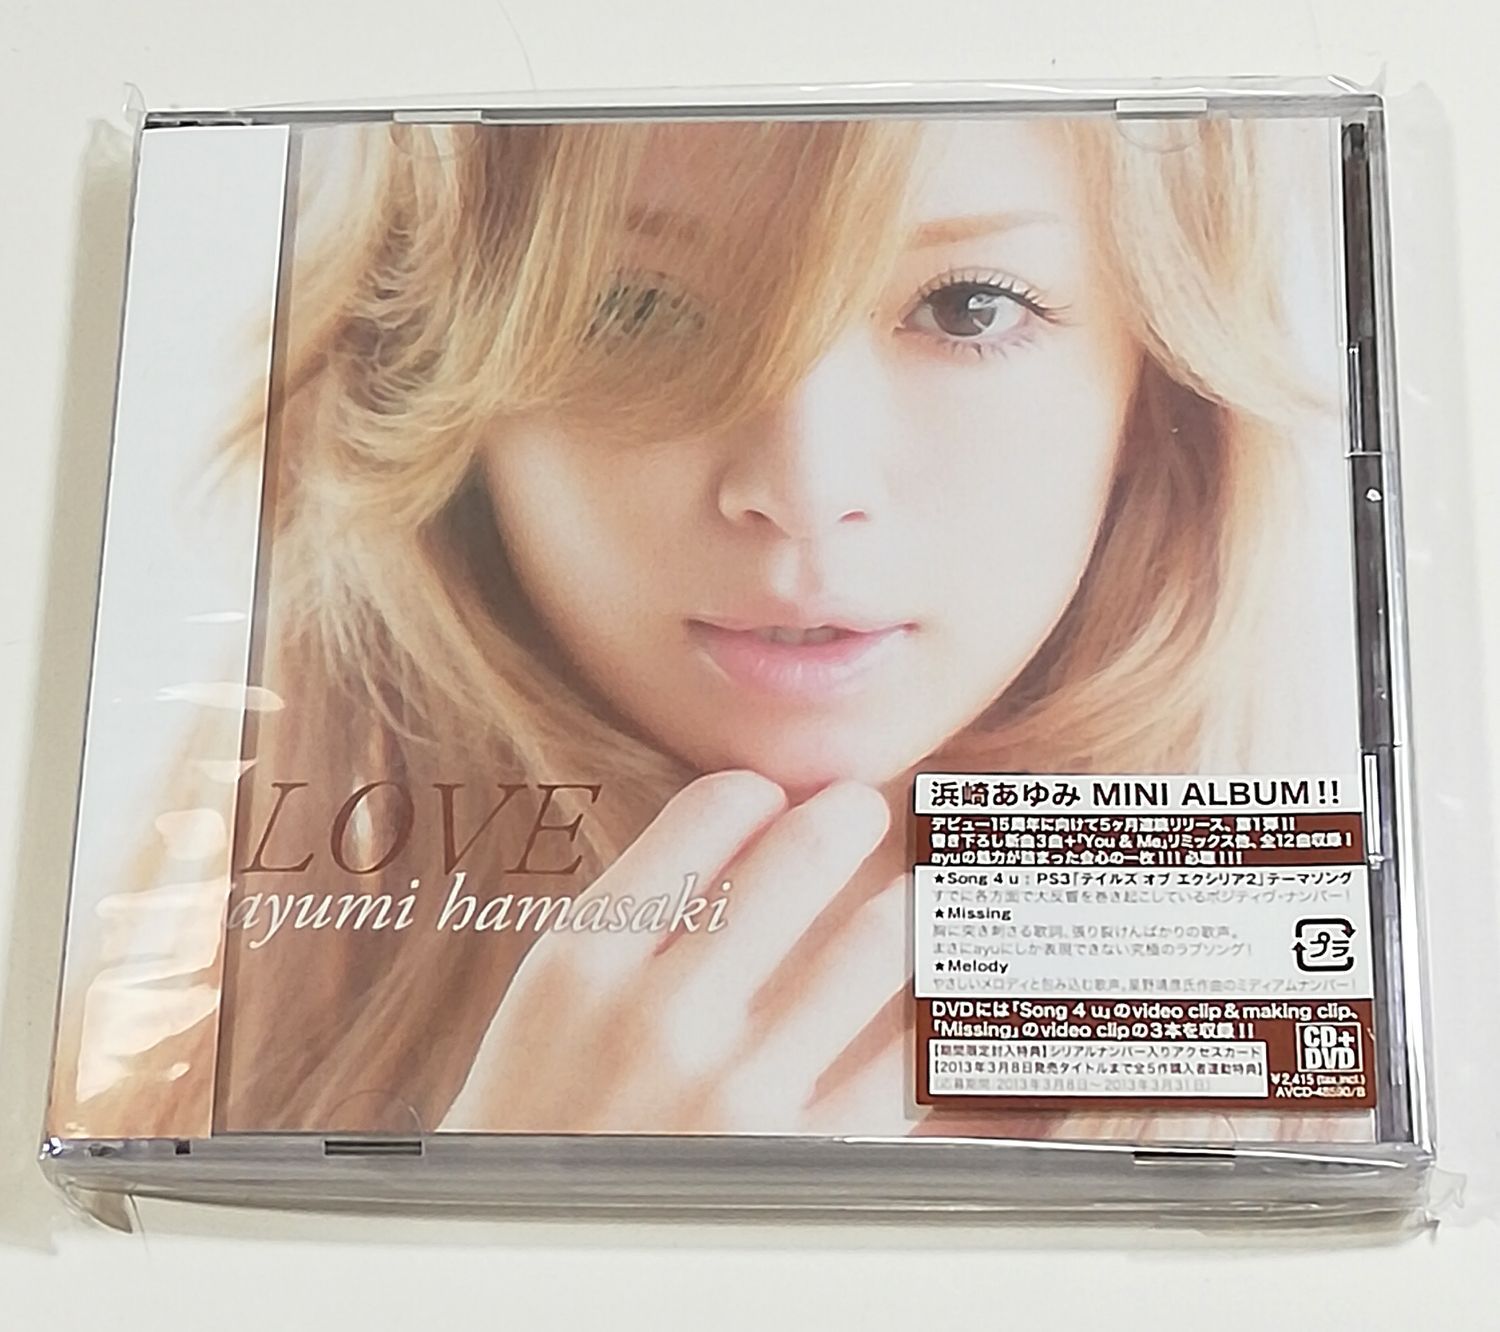 衝撃特価 【初回盤】新品 浜崎あゆみ ayu Amazon.co.jp: FIVE love CD+ 